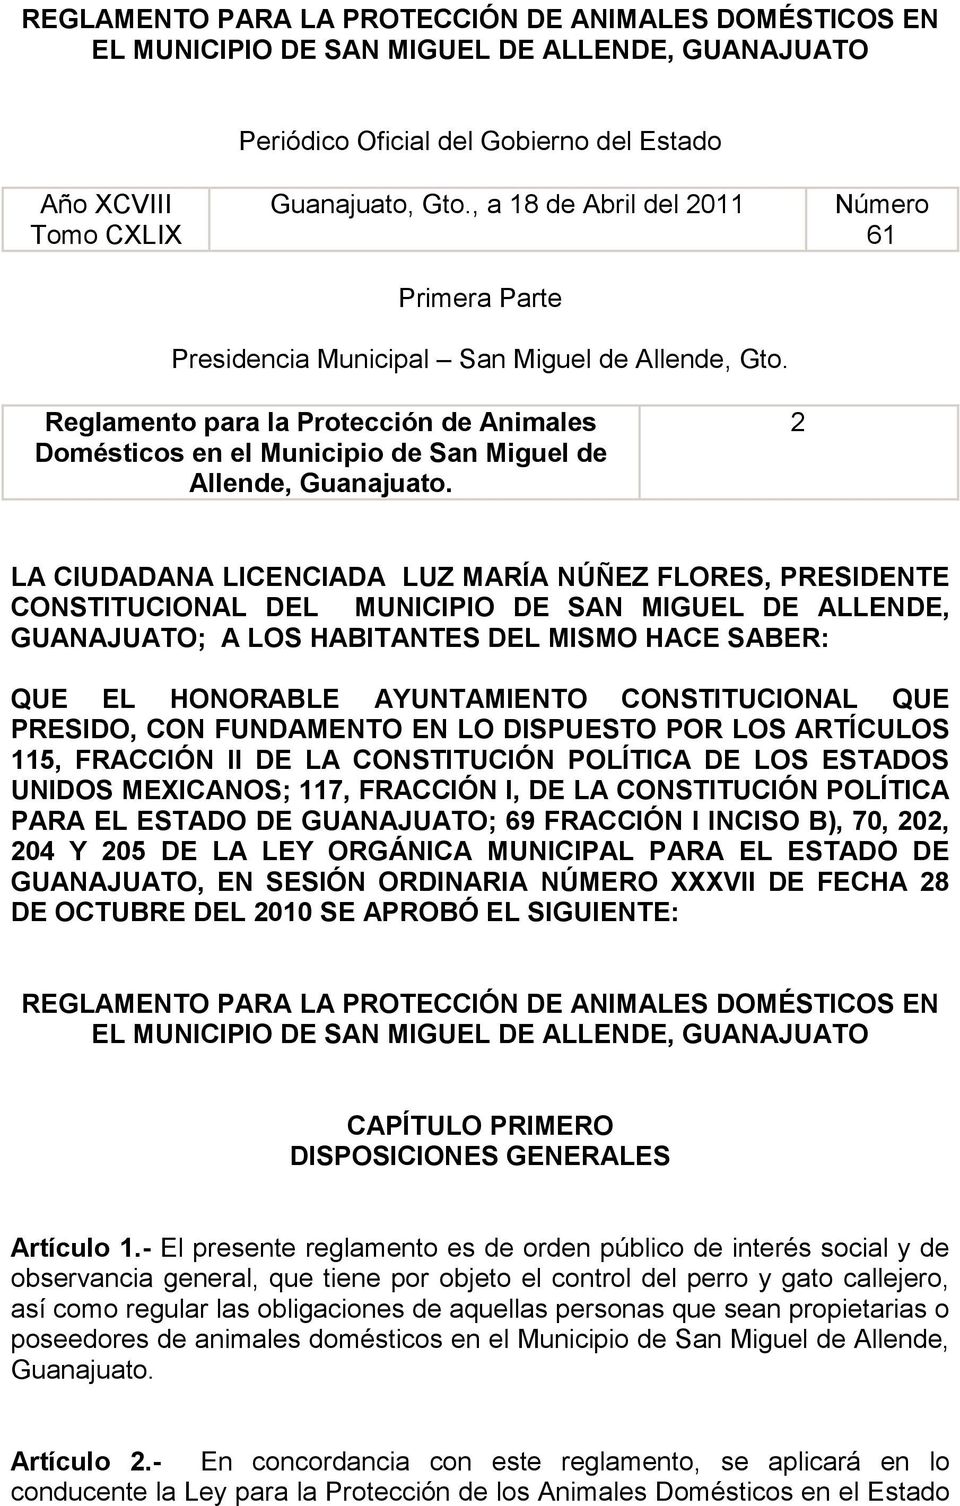 Reglamento para la Protección de Animales Domésticos en el Municipio de San Miguel de Allende, Guanajuato.